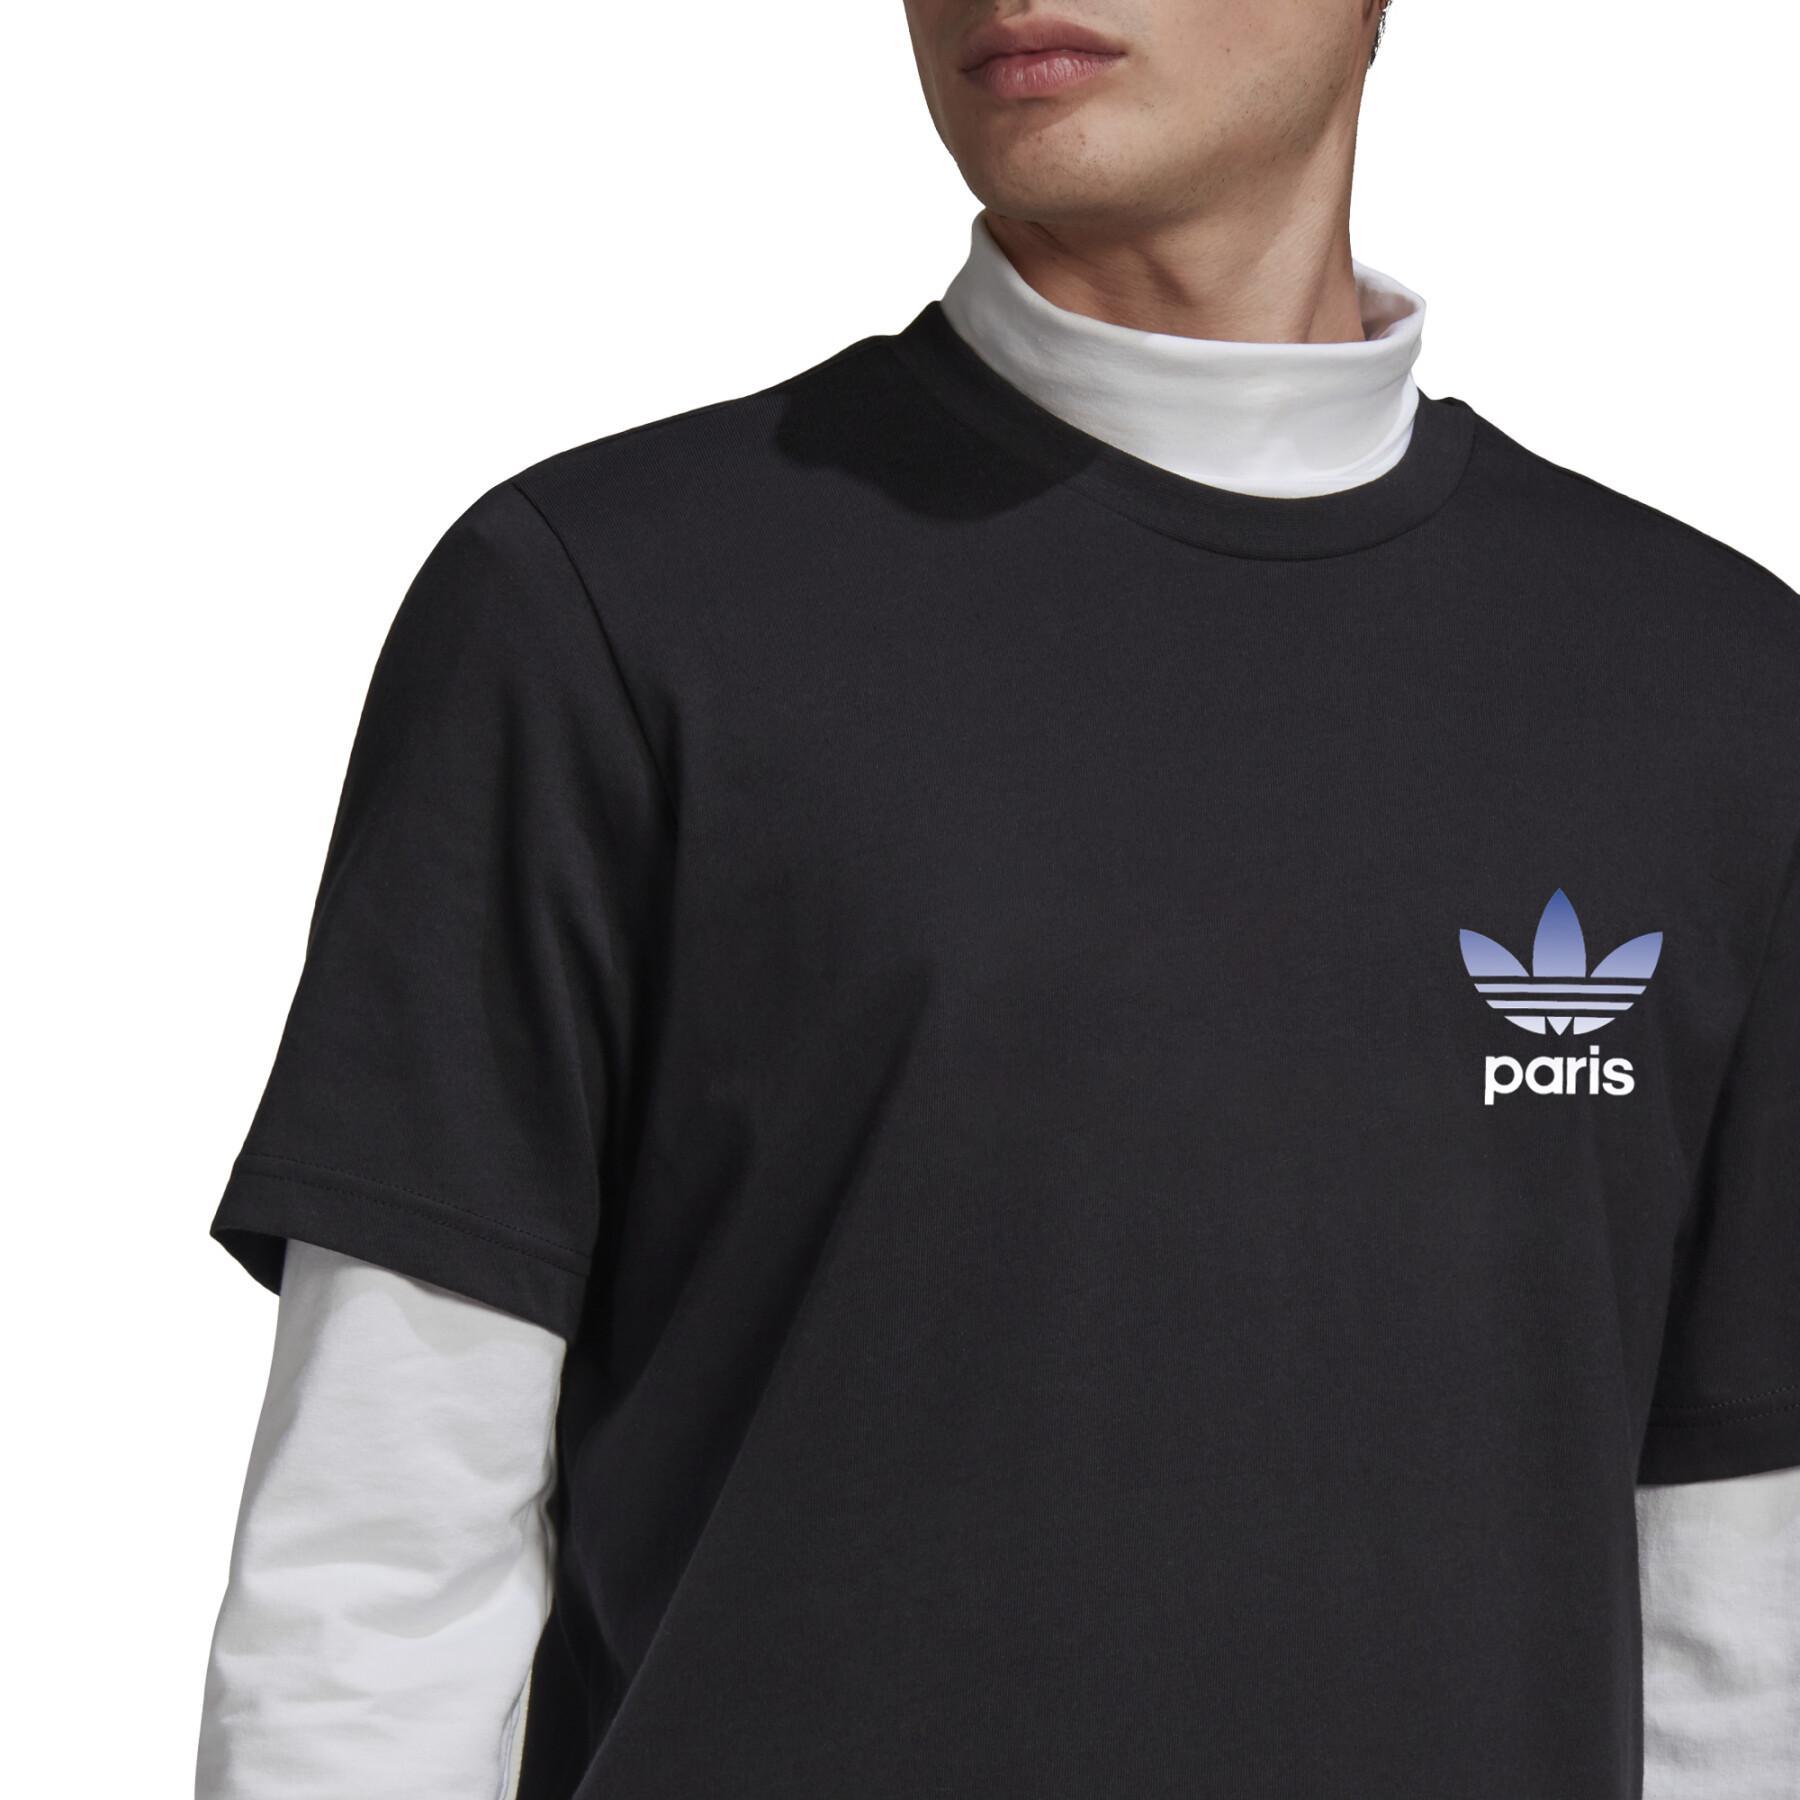 Koszulka adidas Originals Paris Trefoil 2